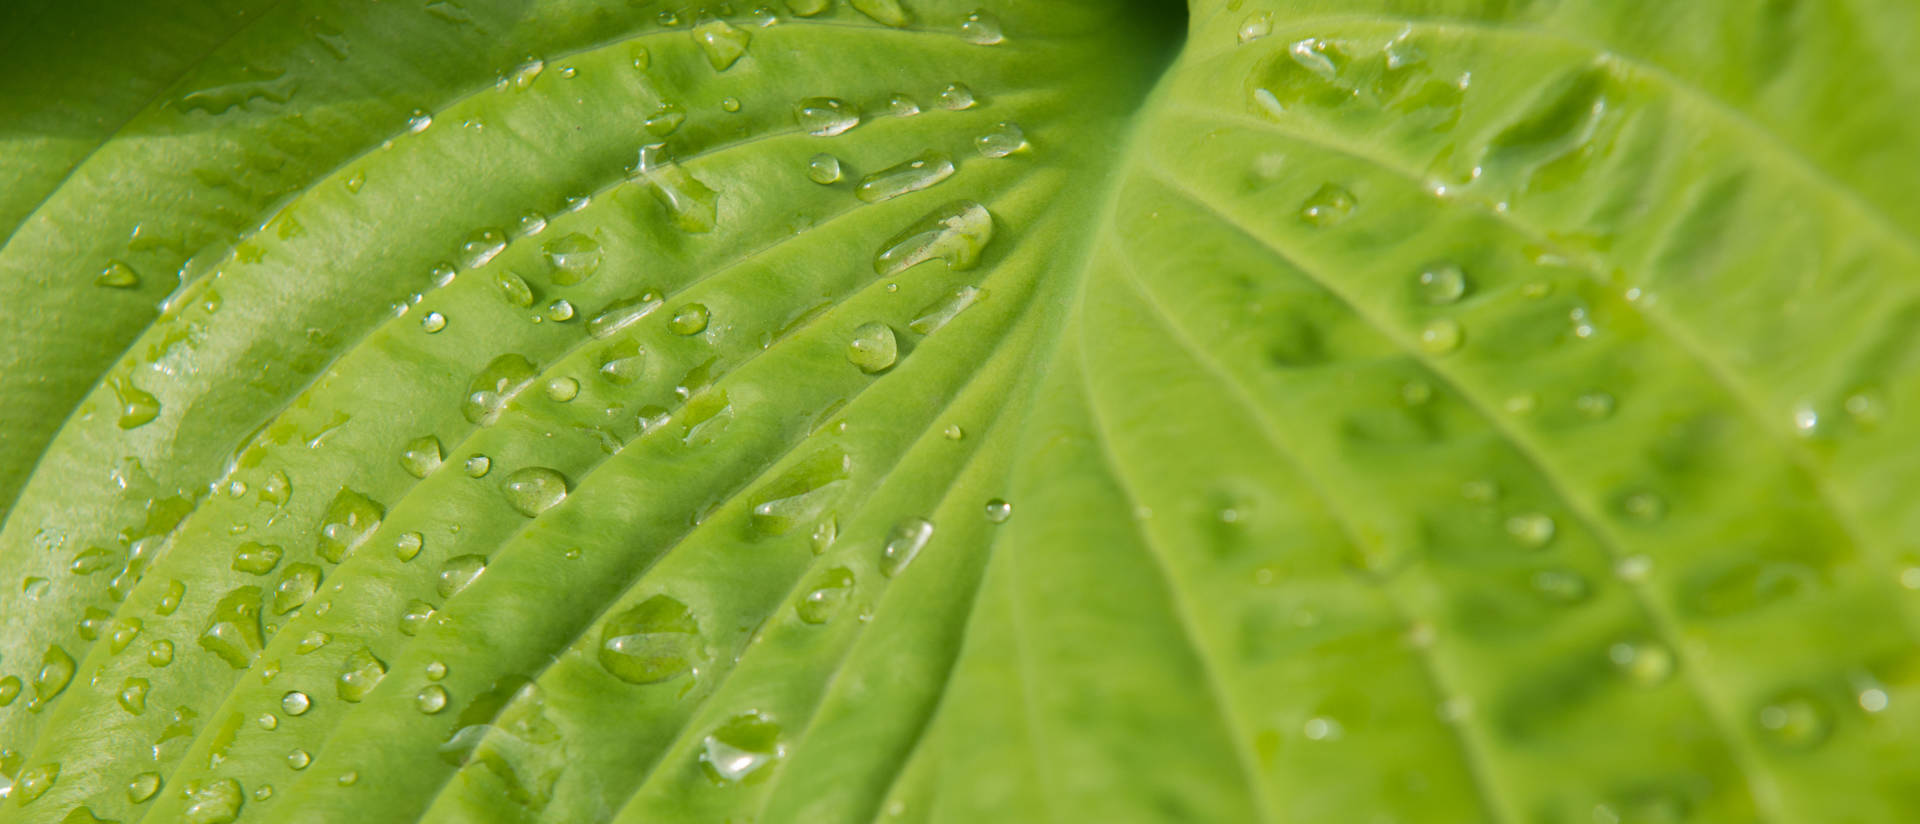 Water droplets on hosta leaf